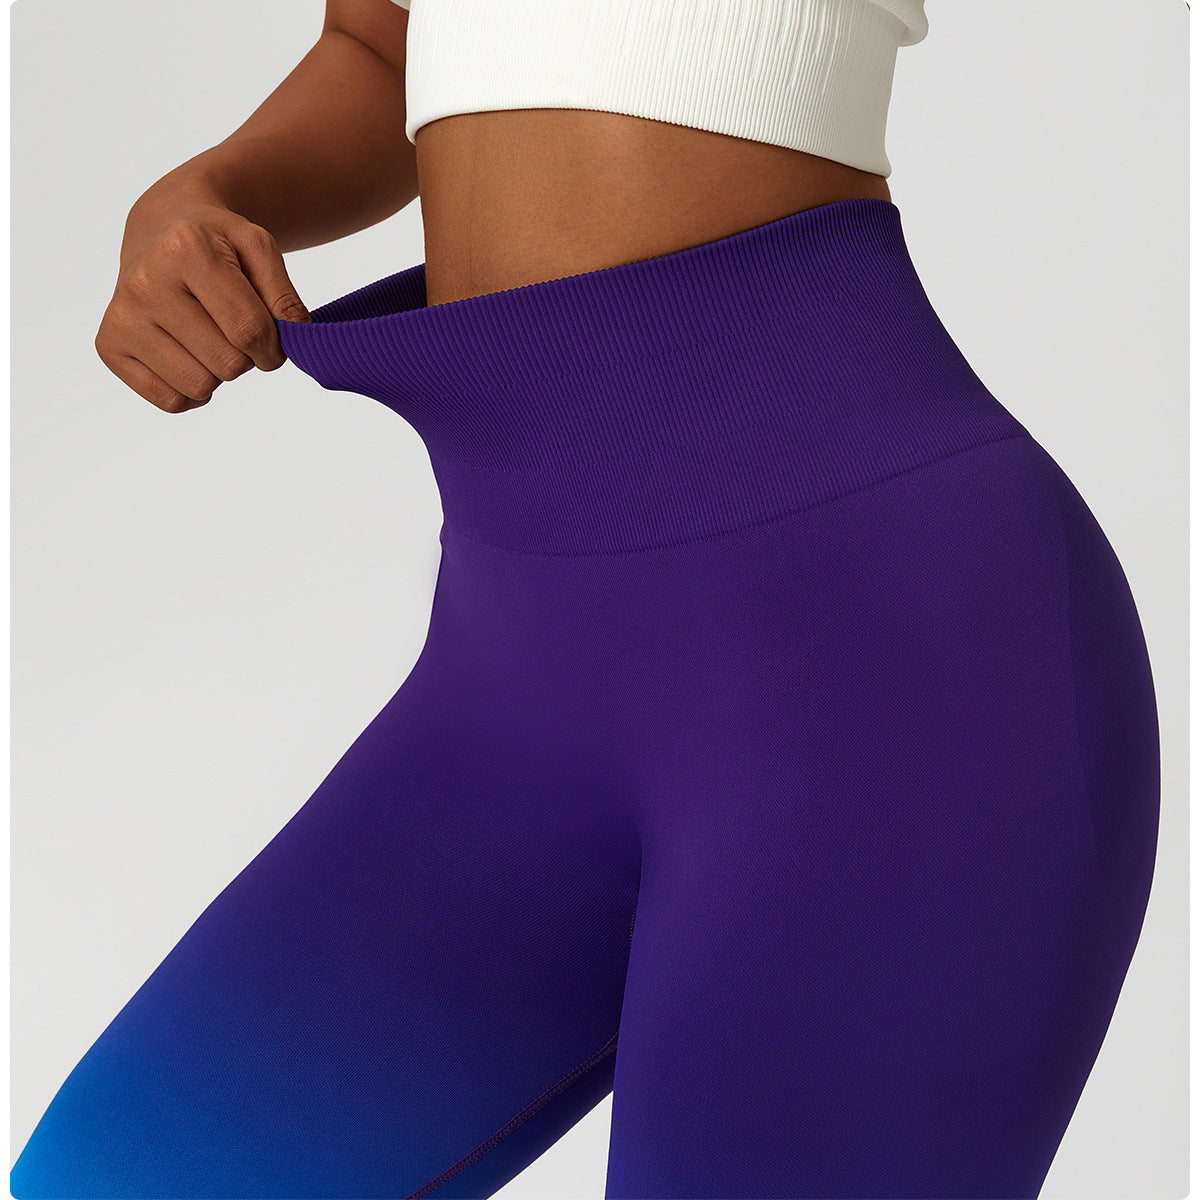 Seamless gradient butt lift legging